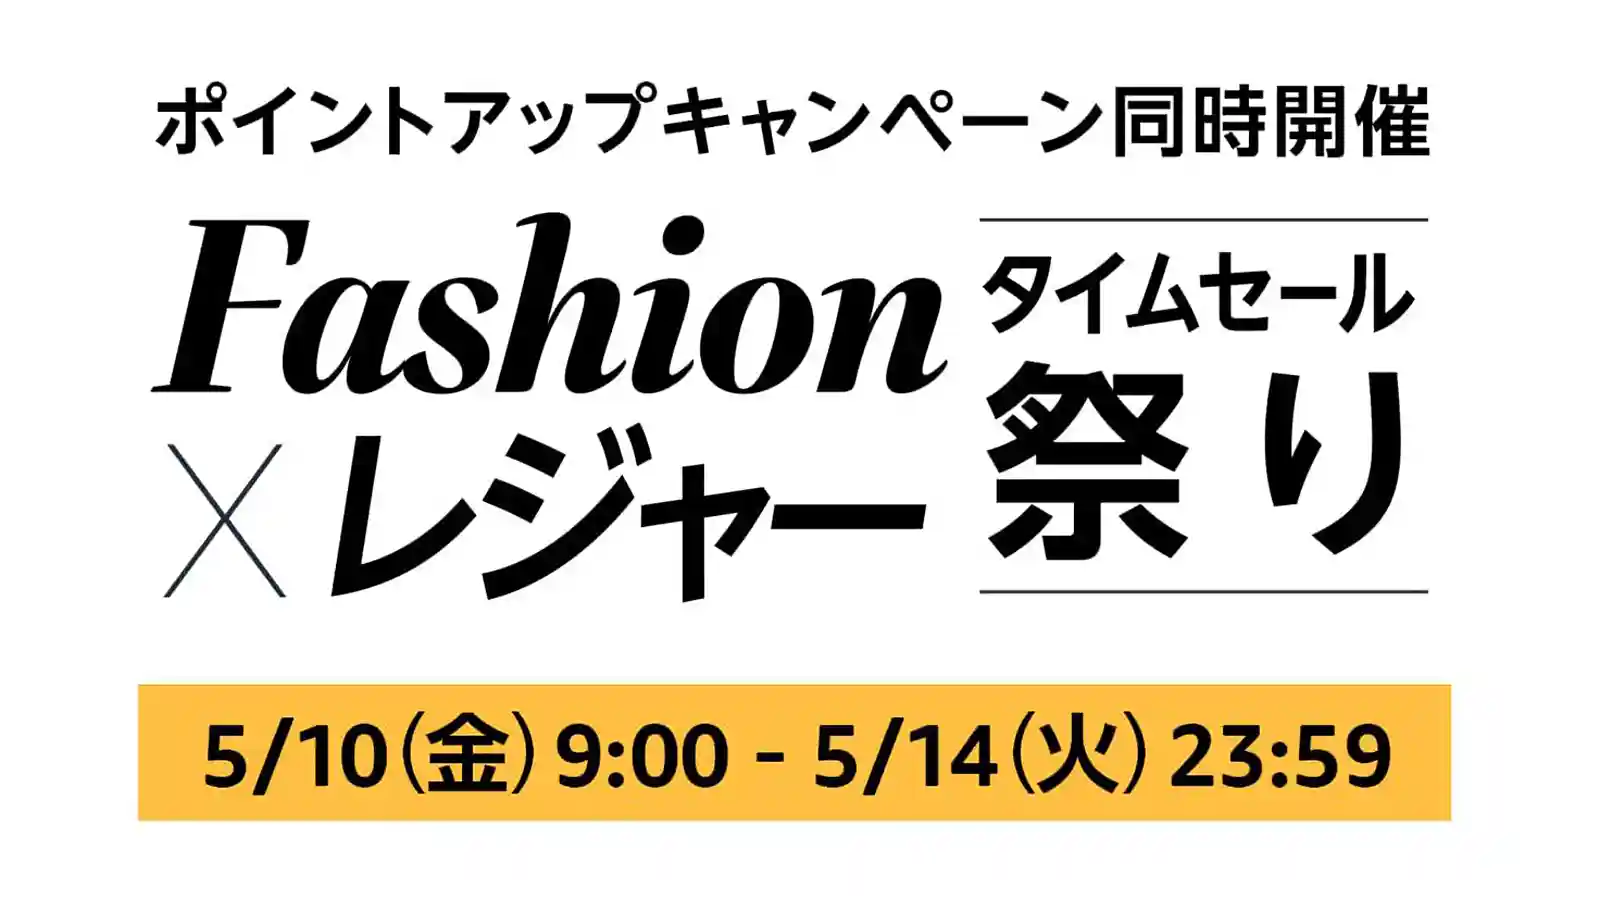 Amazon Fashion ファッション レジャー タイムセール祭り